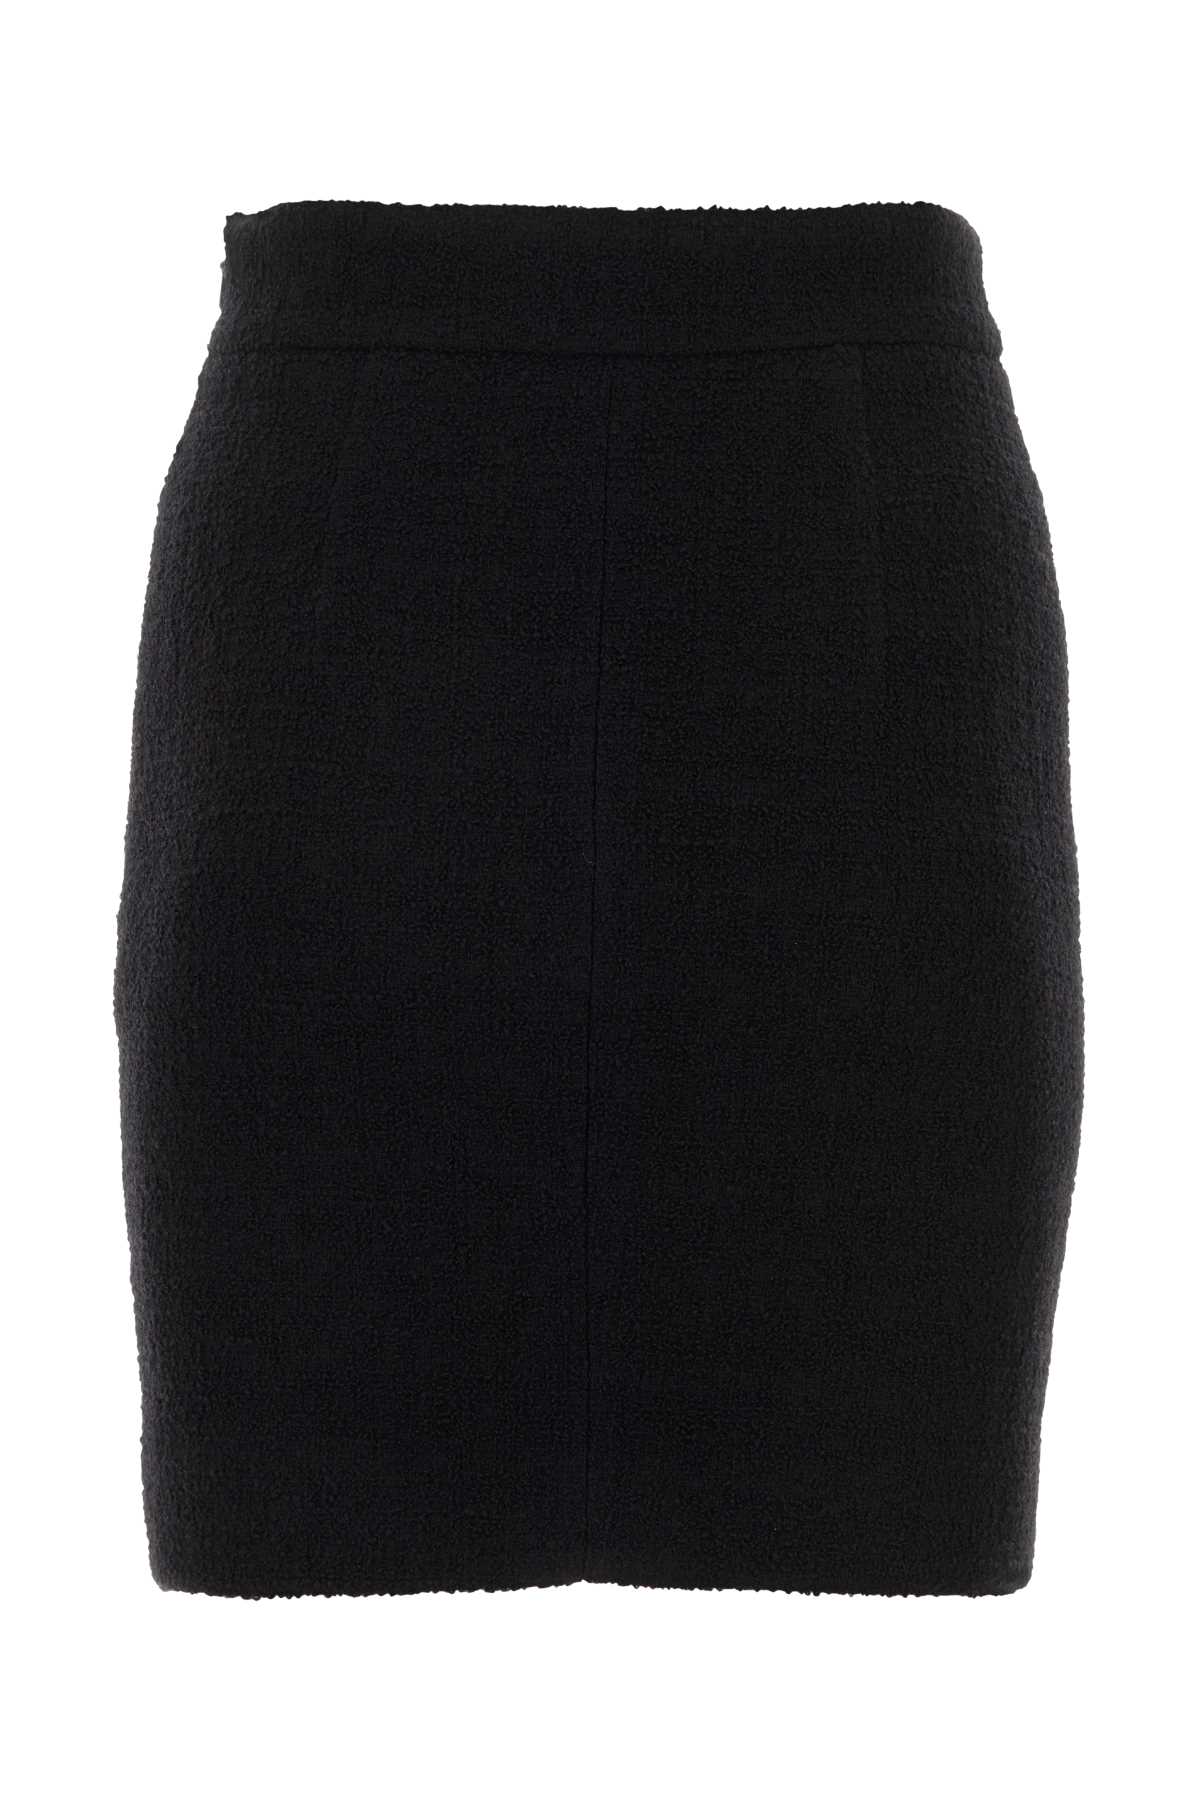 Moschino Black Wool Blend Miniskirt In Nero